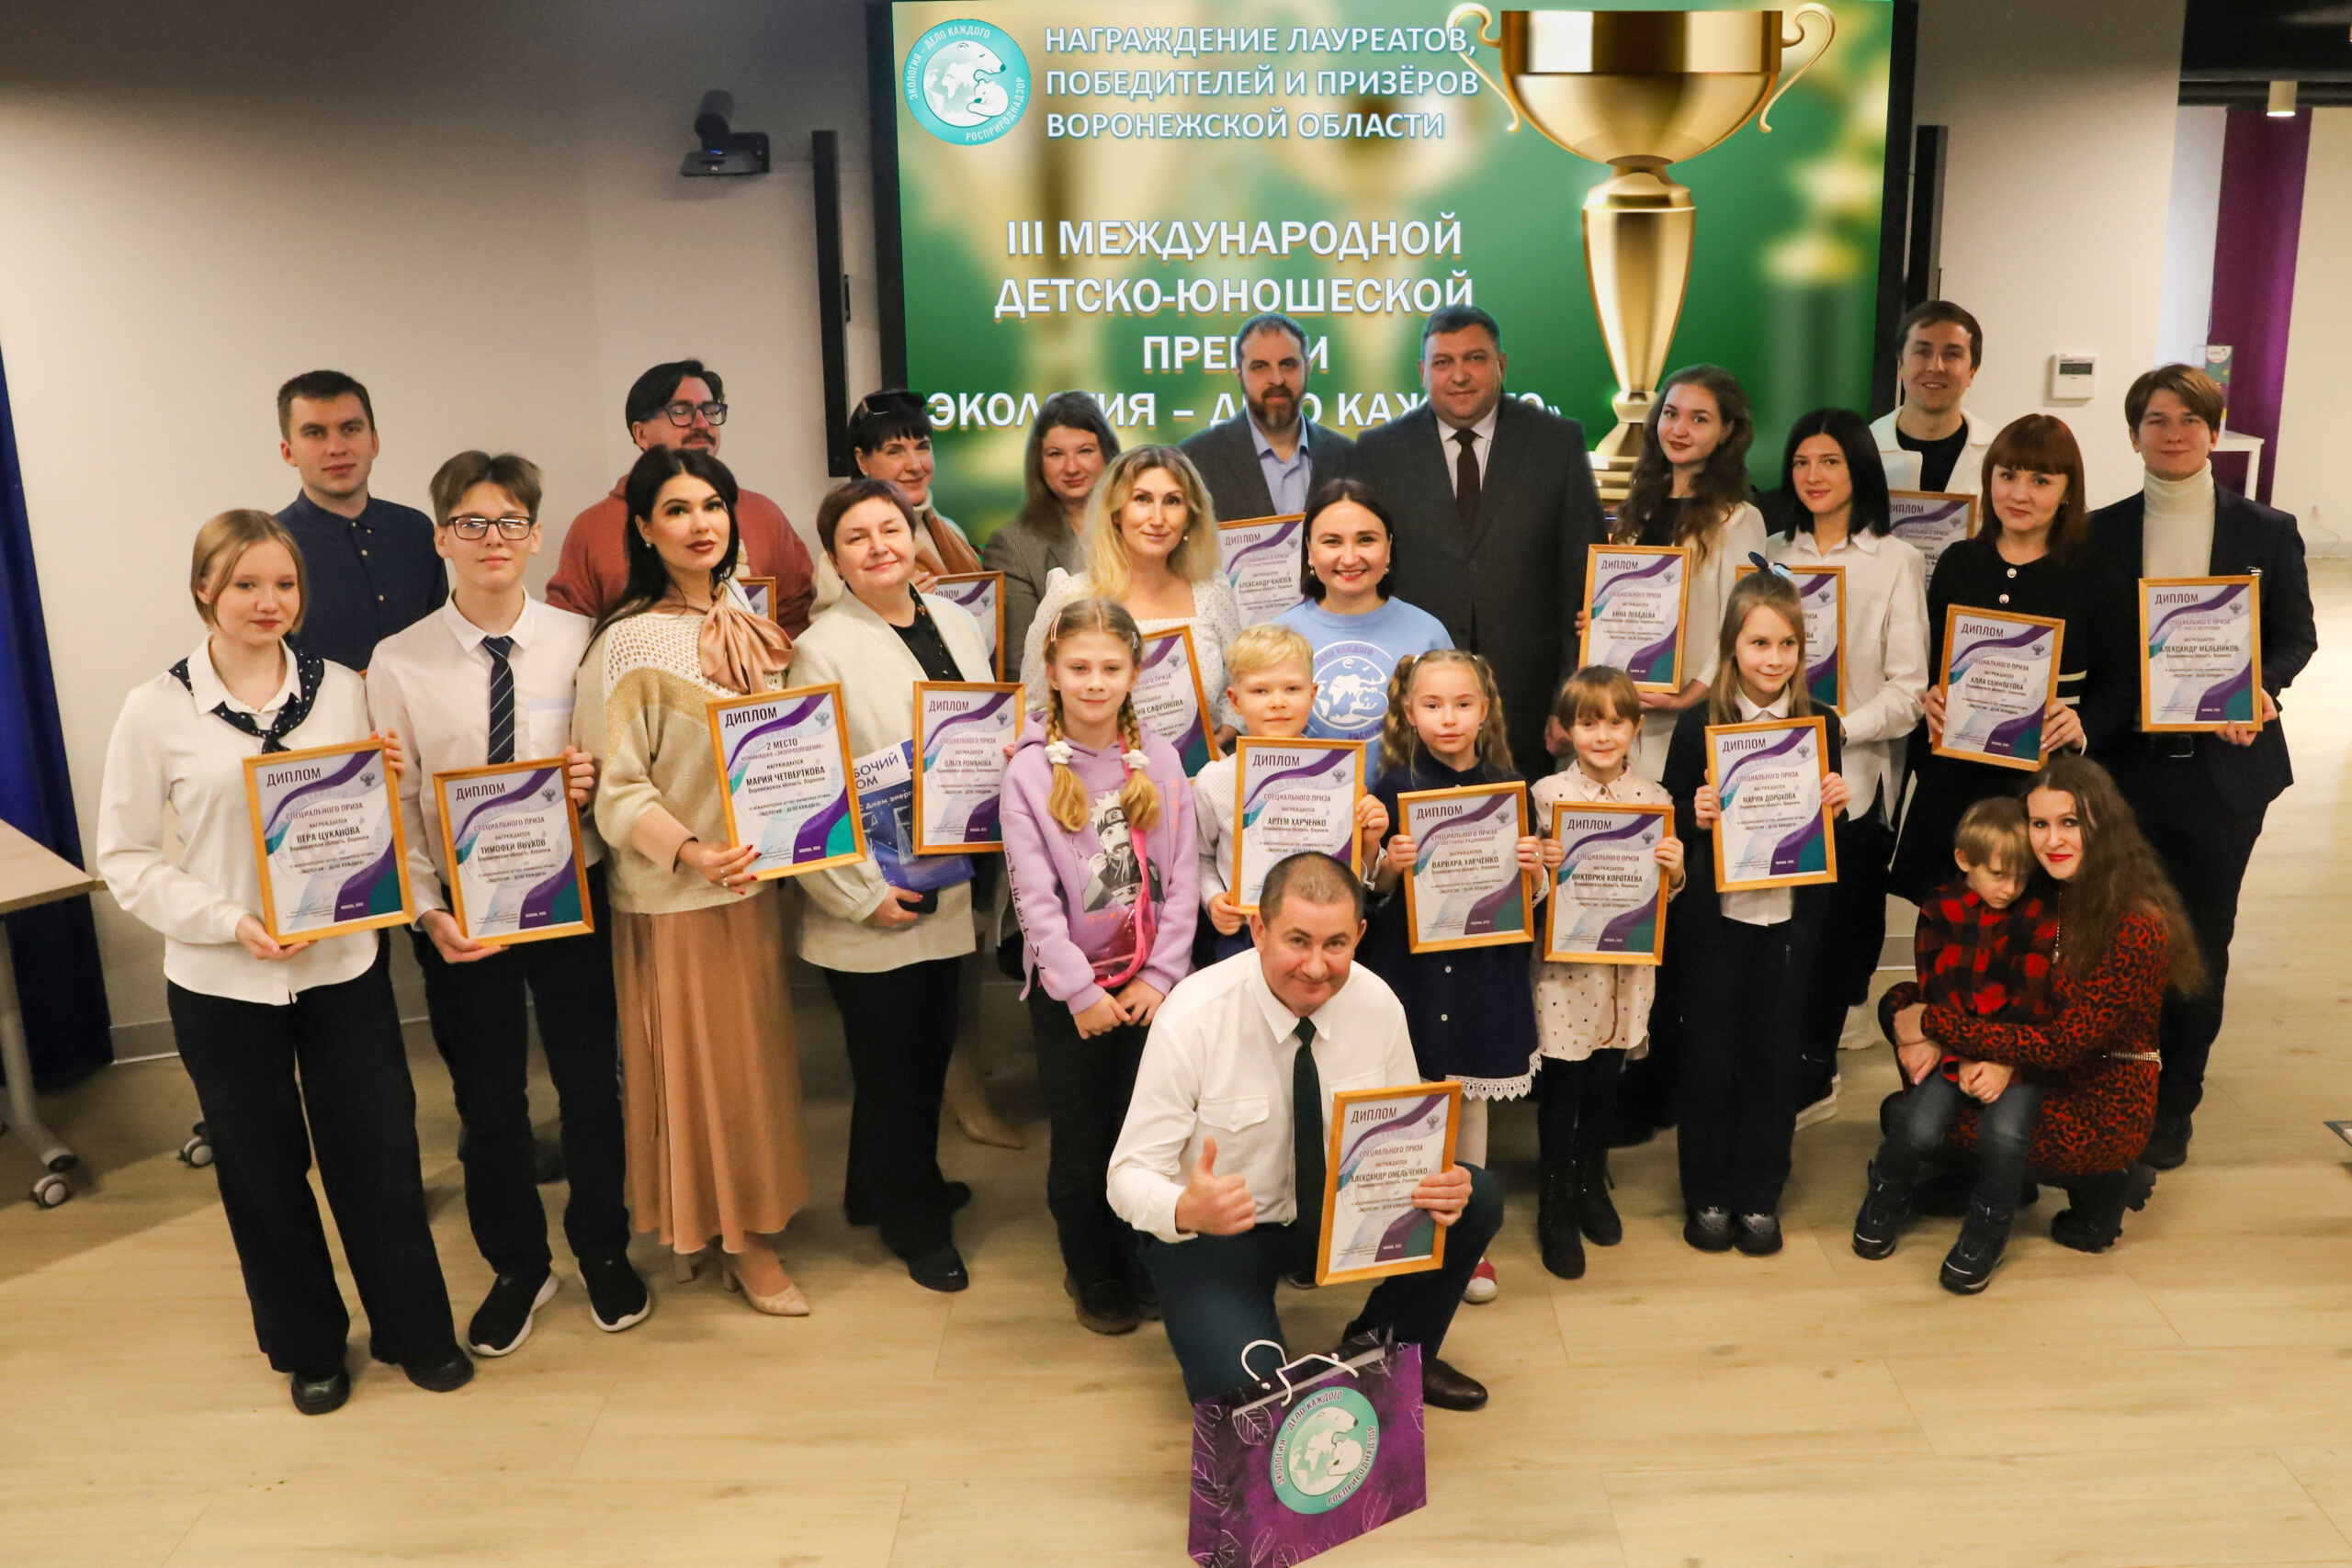 АГРОЭКО – призер III Международной детско-юношеской премии «Экология-дело каждого»